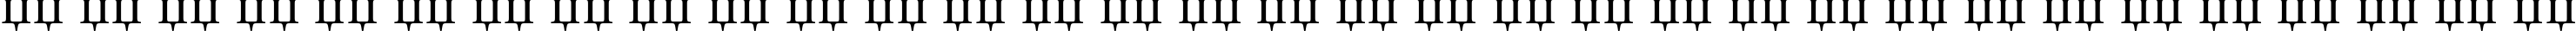 Пример написания русского алфавита шрифтом MinionCyr-Regular